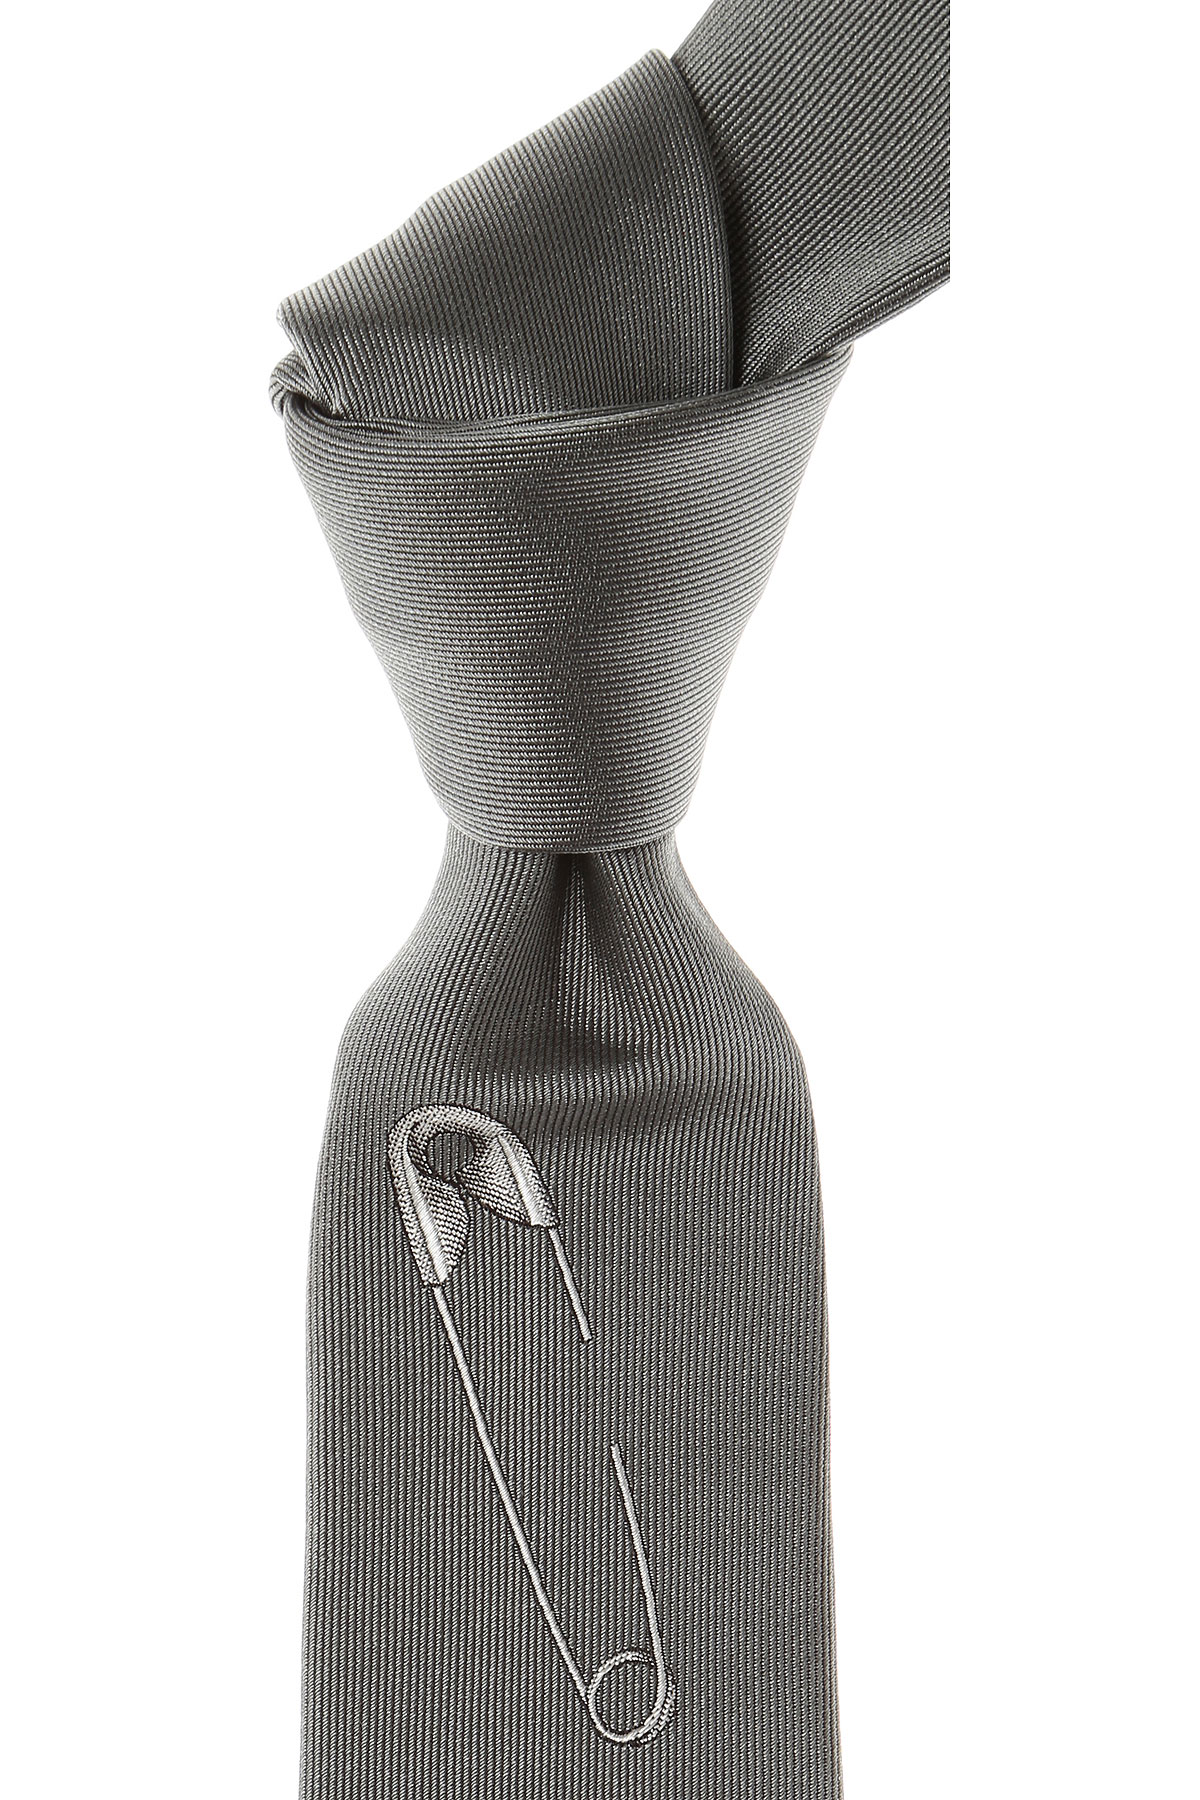 Cravates Givenchy , Graphite, Soie, 2017